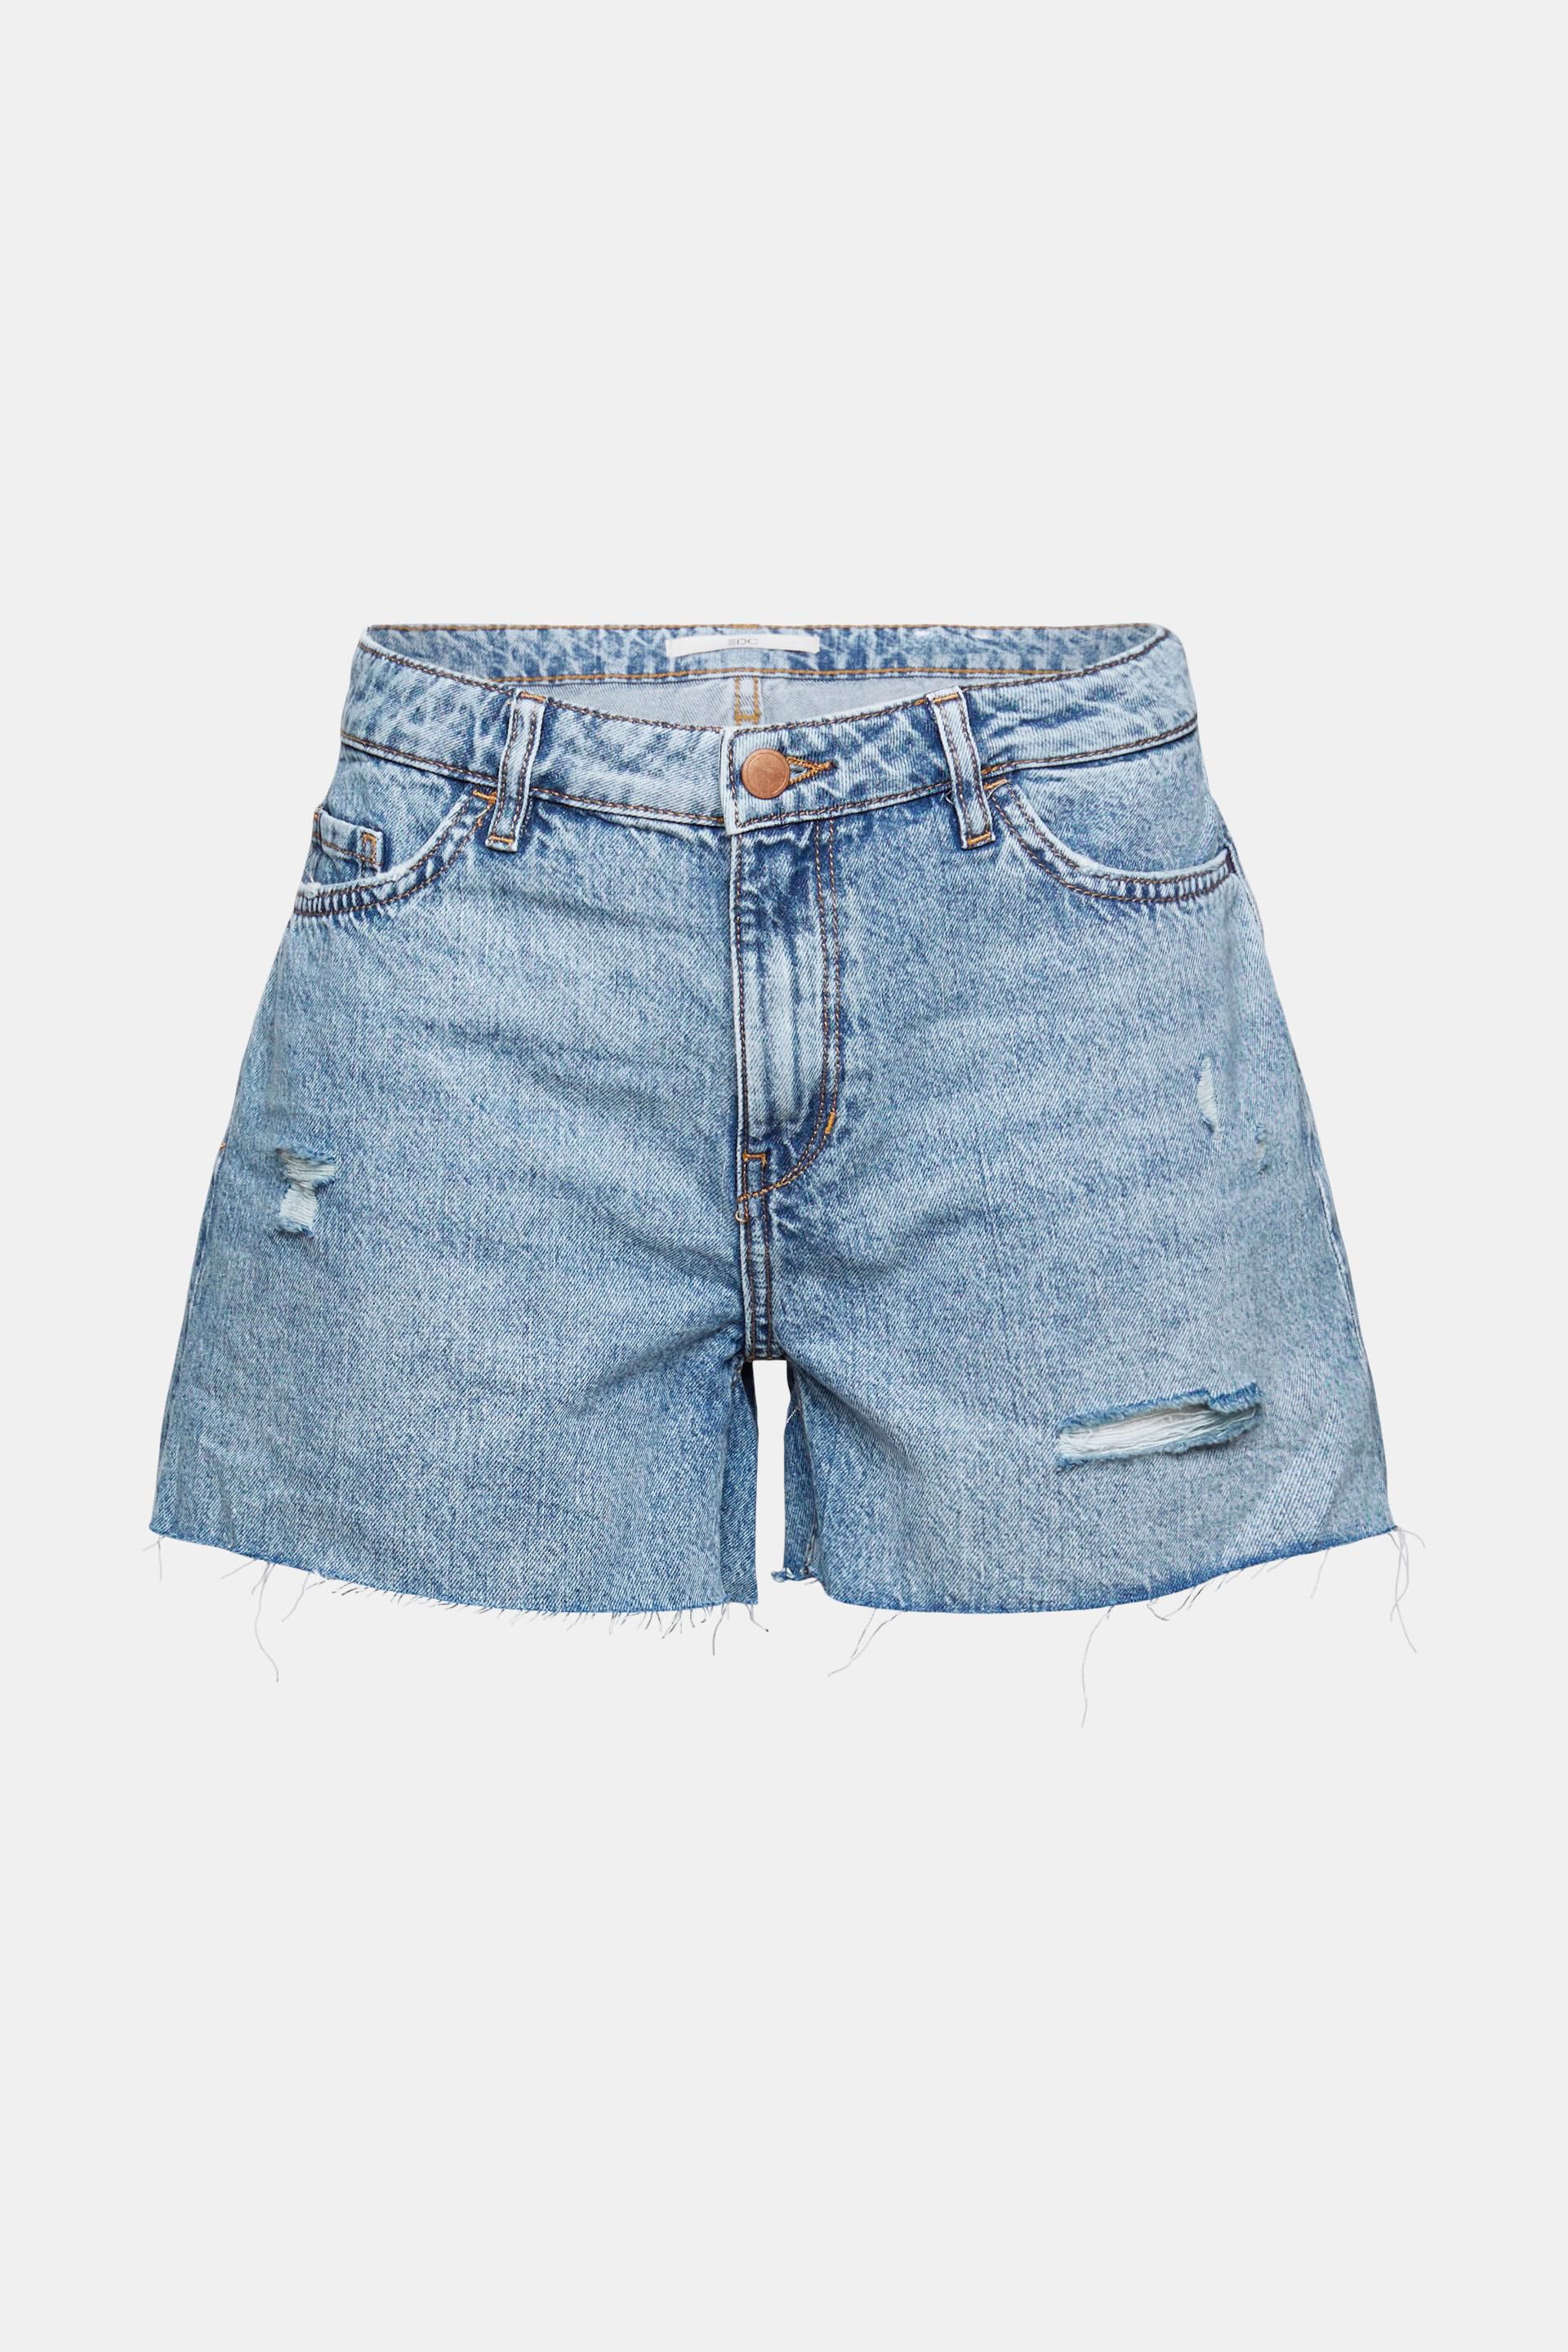 Dames Kleding voor voor Shorts voor Hotpants Esprit Fashion Denim Shorts in het Blauw 